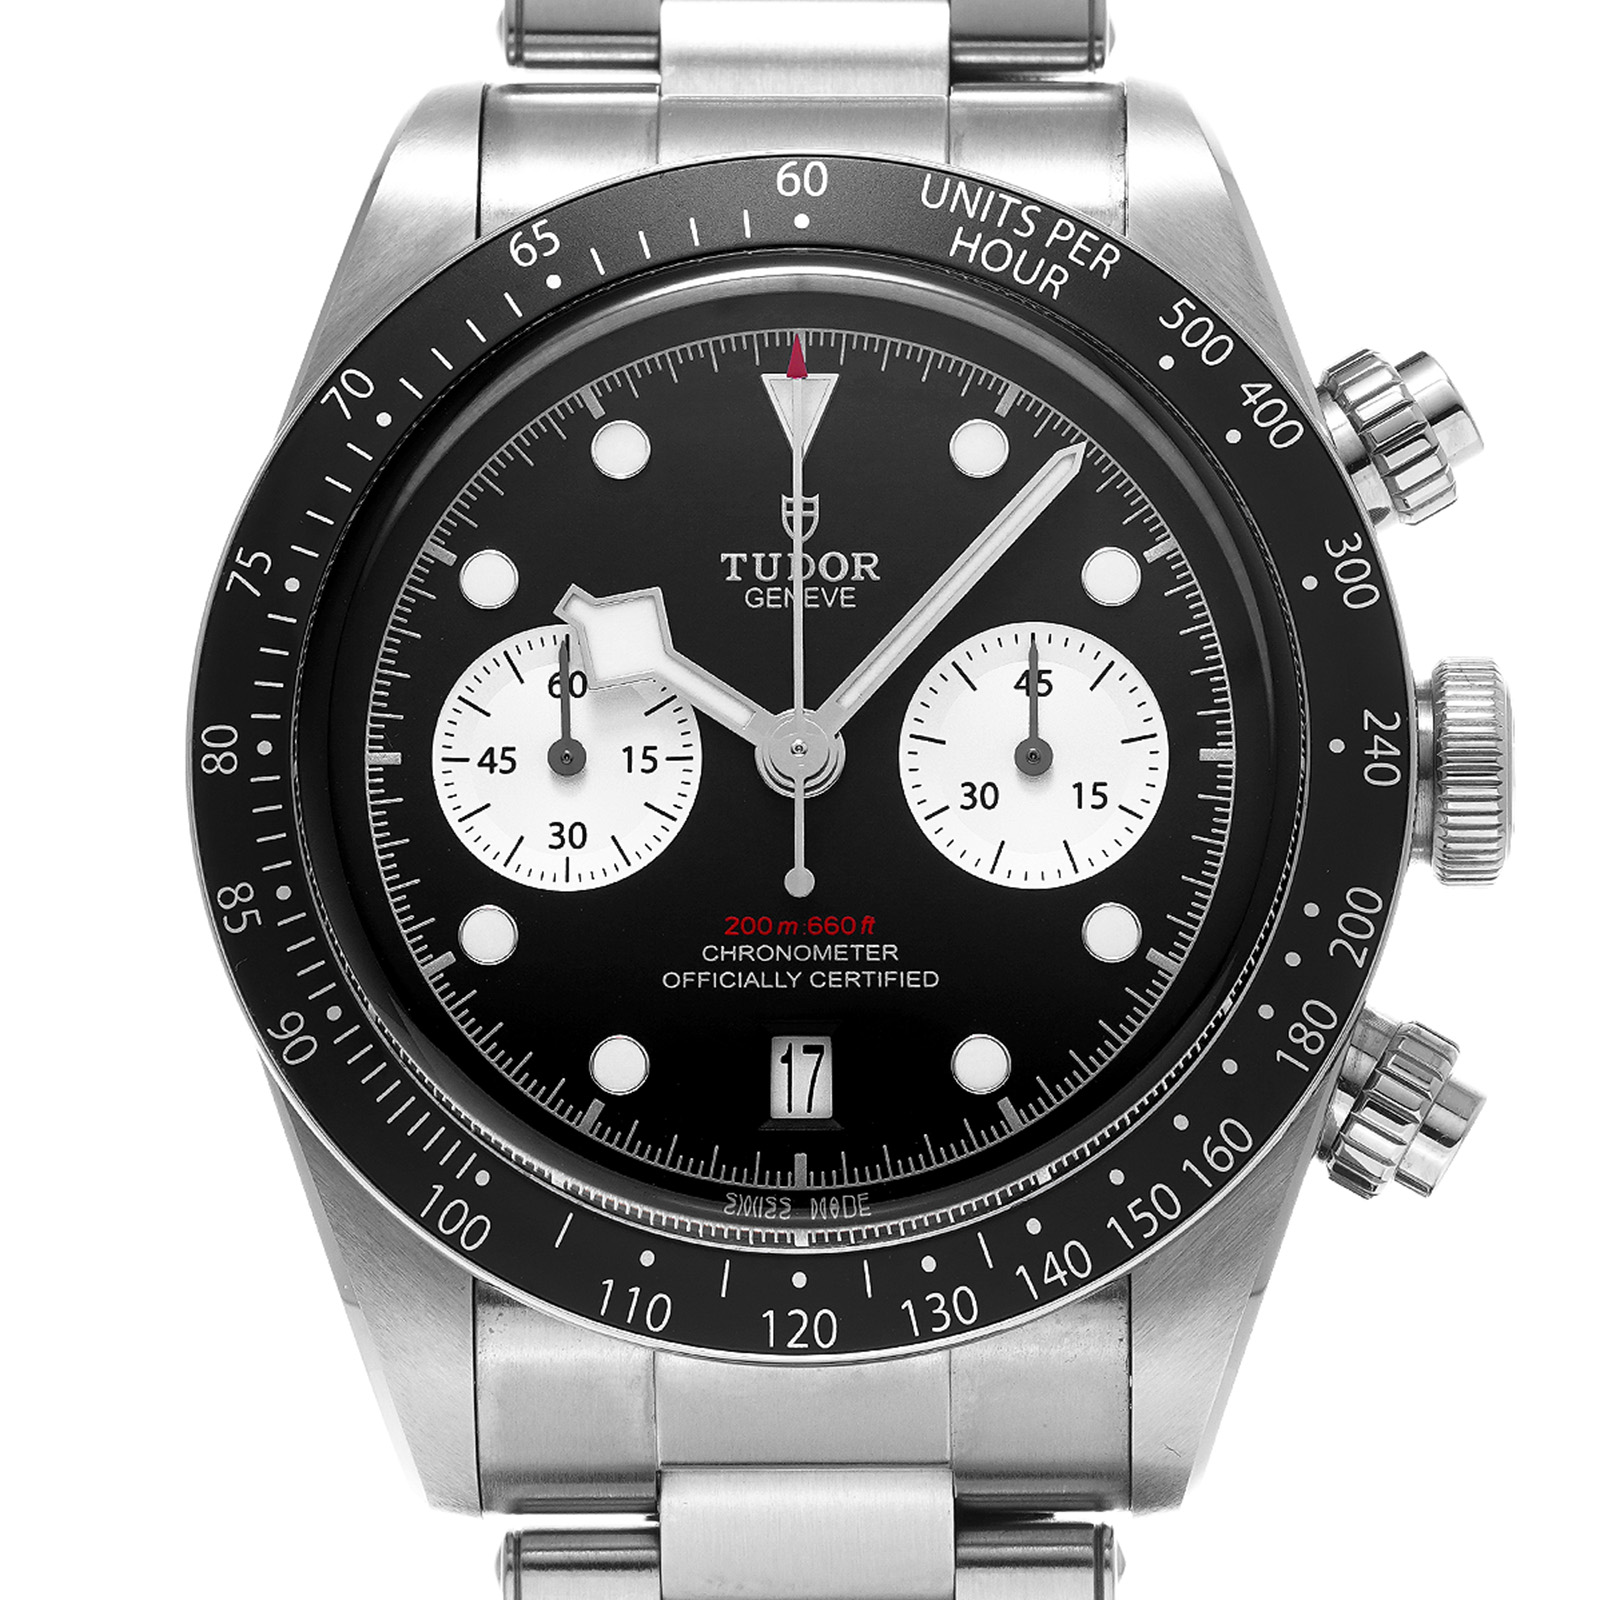 チューダー / チュードル TUDOR 79360N ブラック /シルバー メンズ 腕時計